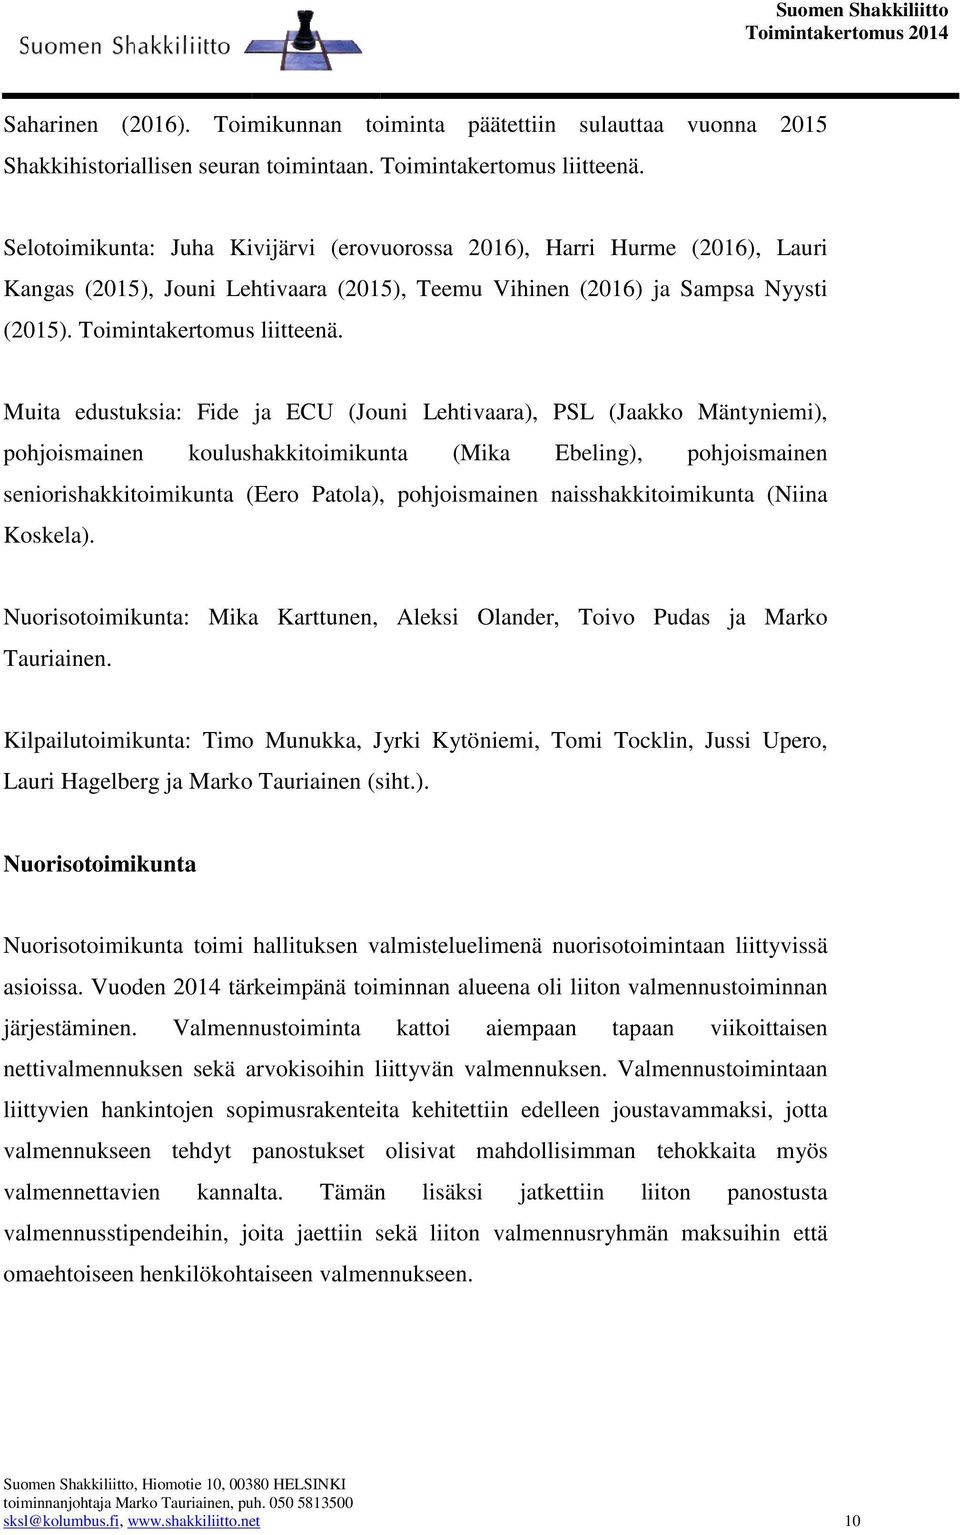 Muita edustuksia: Fide ja ECU (Jouni Lehtivaara), PSL (Jaakko Mäntyniemi), pohjoismainen koulushakkitoimikunta (Mika Ebeling), pohjoismainen seniorishakkitoimikunta (Eero Patola), pohjoismainen